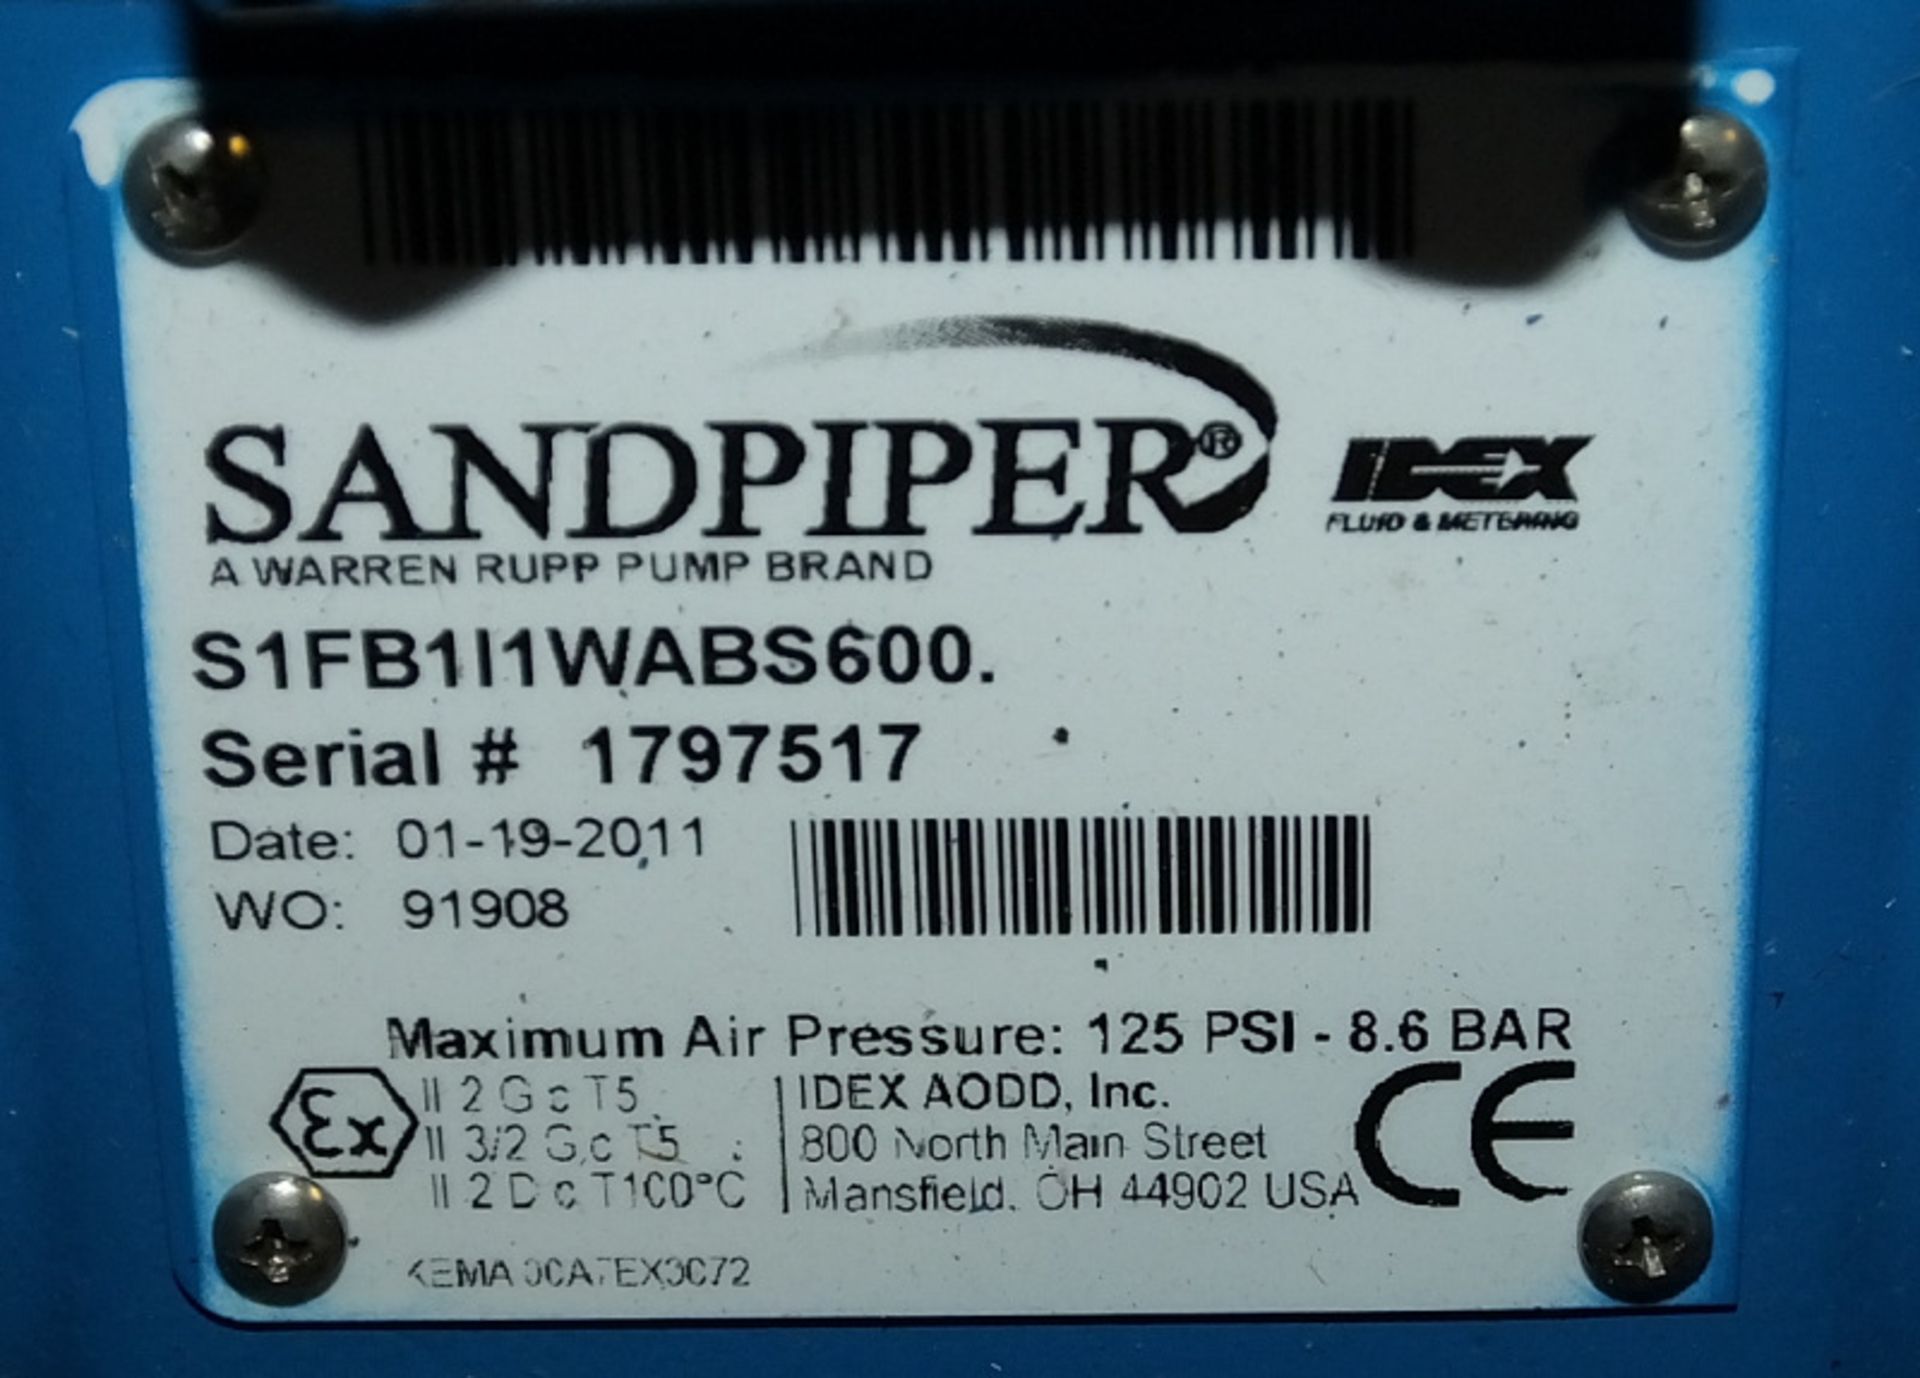 Warren Rupp Sandpiper S1F pump unit 125 psi - 8.6 bar - Image 3 of 5